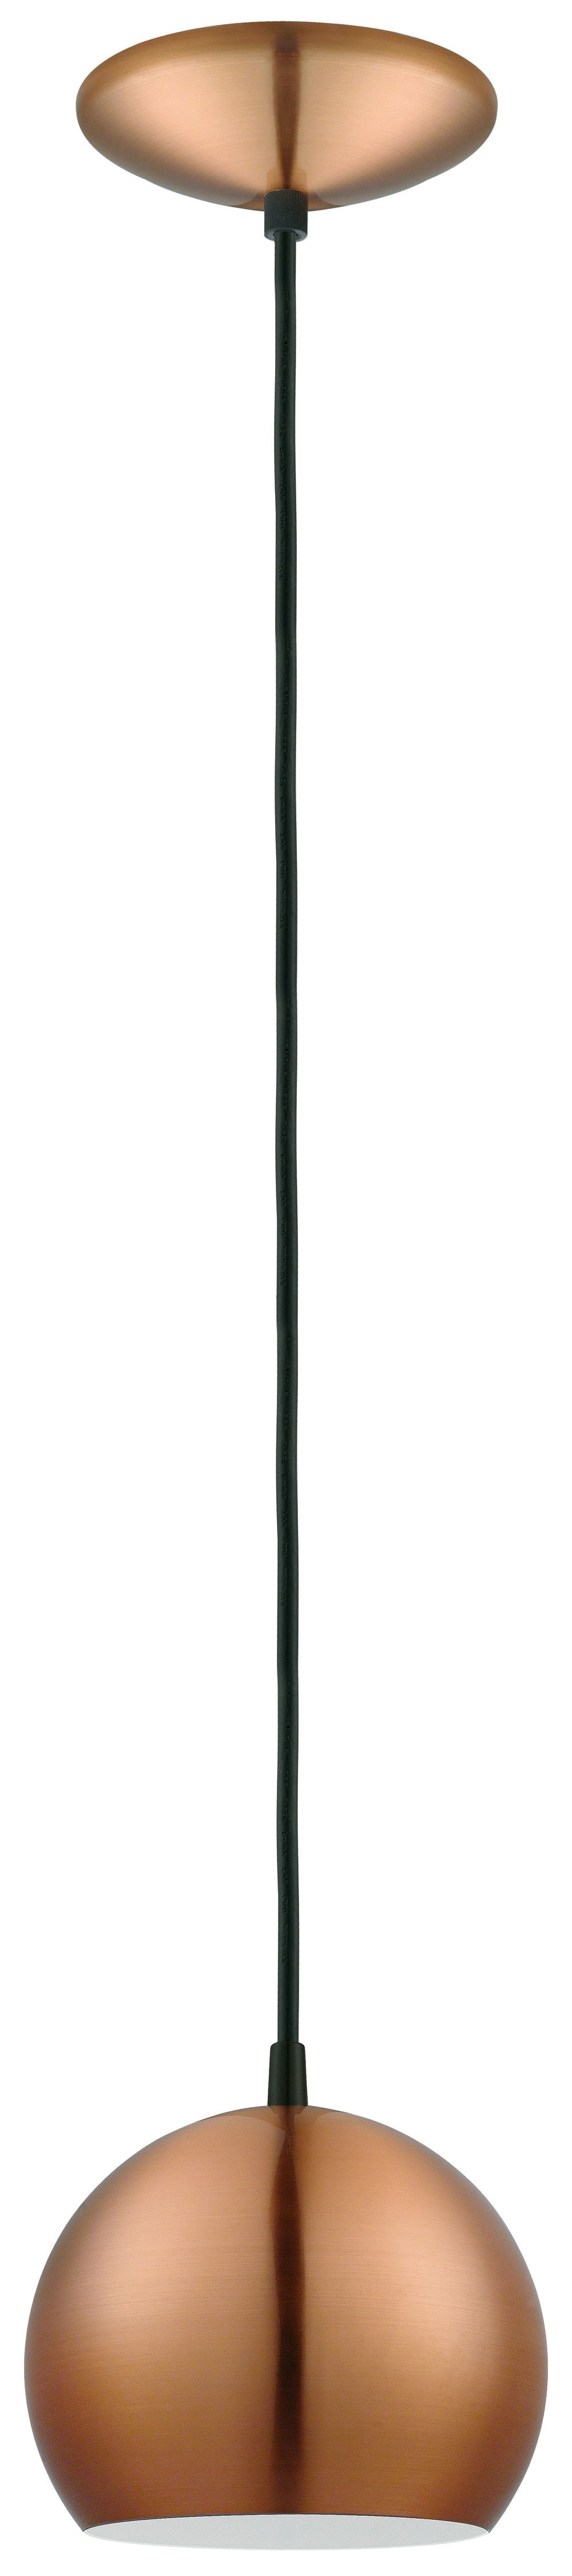 Petto Suspension simple Bronze - 93837A | EGLO